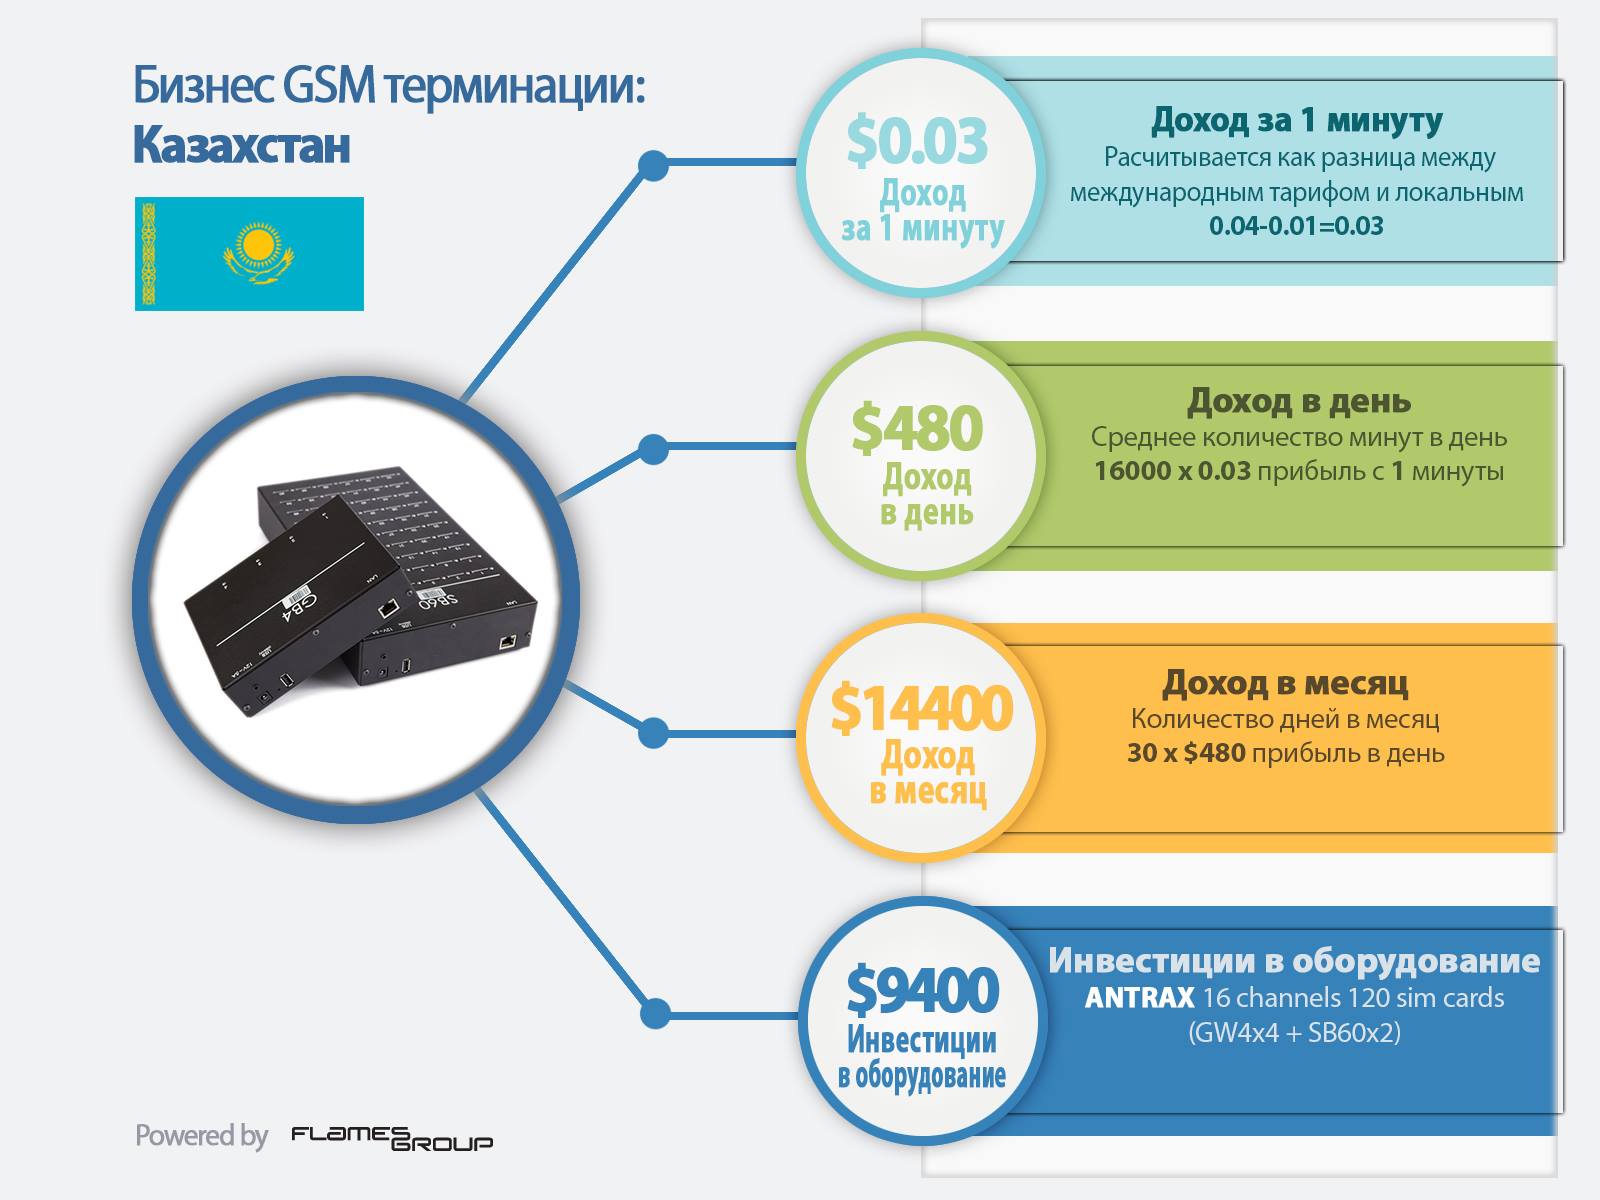 GSM терминация в Казахстане - Инфографика ANTRAX